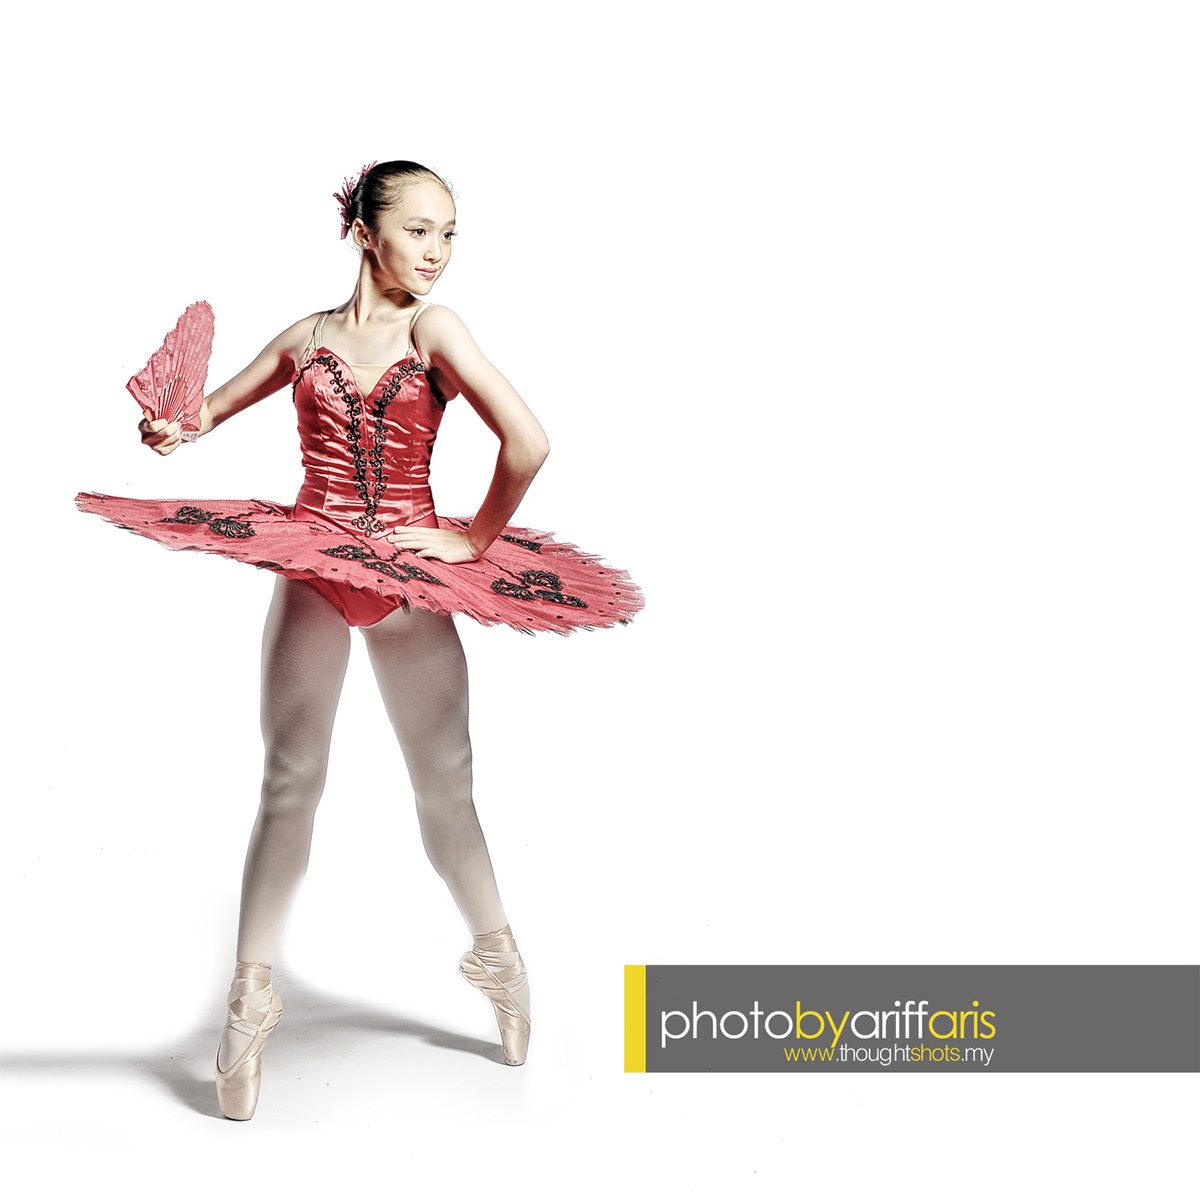 ballet classical ballet dancer DANCE  